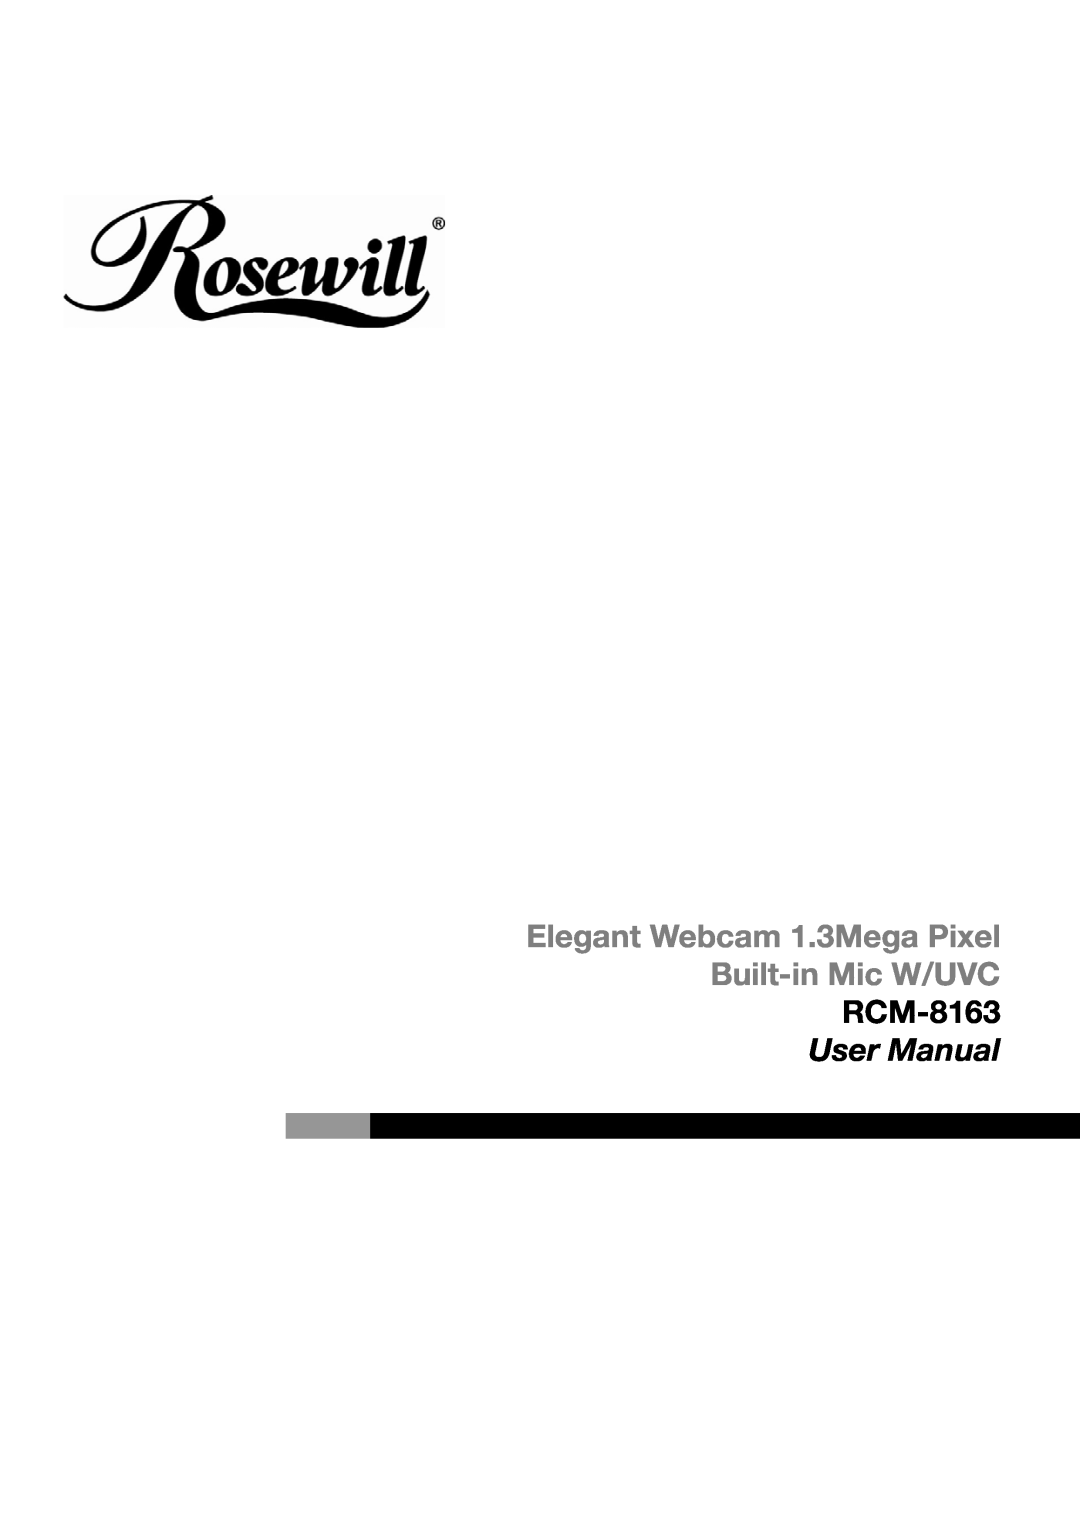 Rosewill user manual Elegant Webcam 1.3Mega Pixel Built-in Mic W/UVC RCM-8163 User Manual 